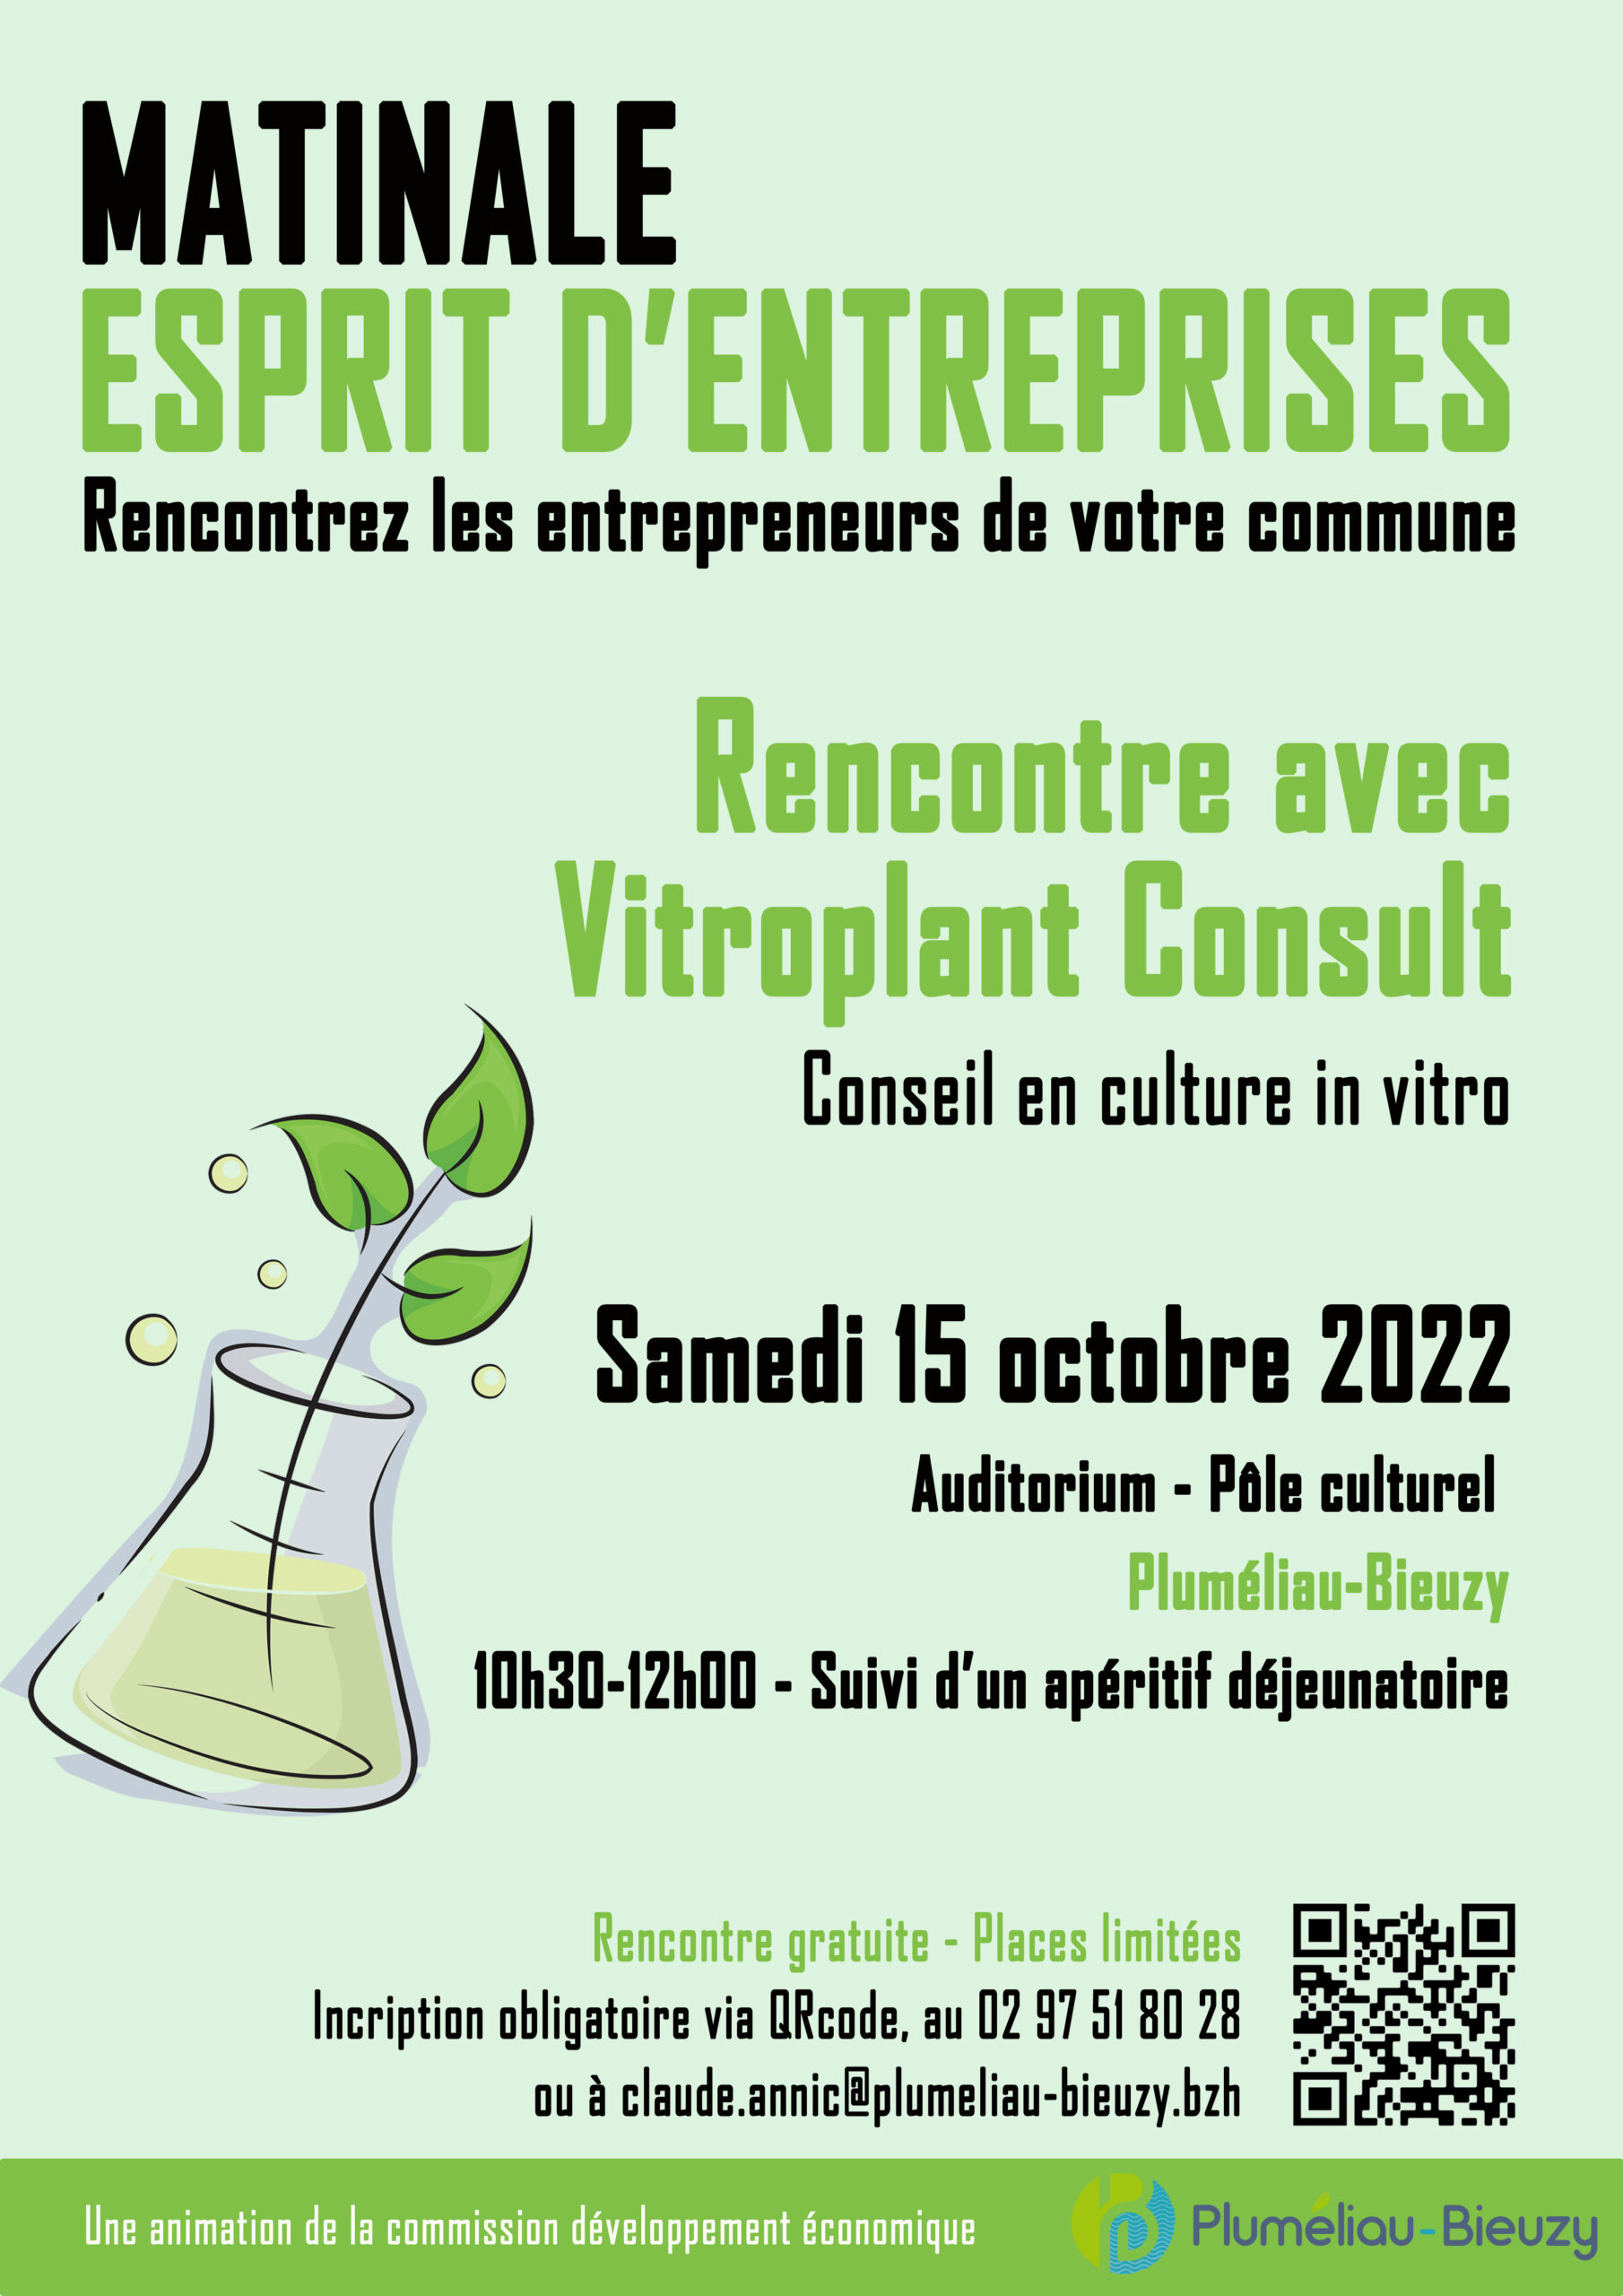 Matinale Esprit d’entreprises du 15 octobre 2022 – Rencontre avec Vitroplant Consult